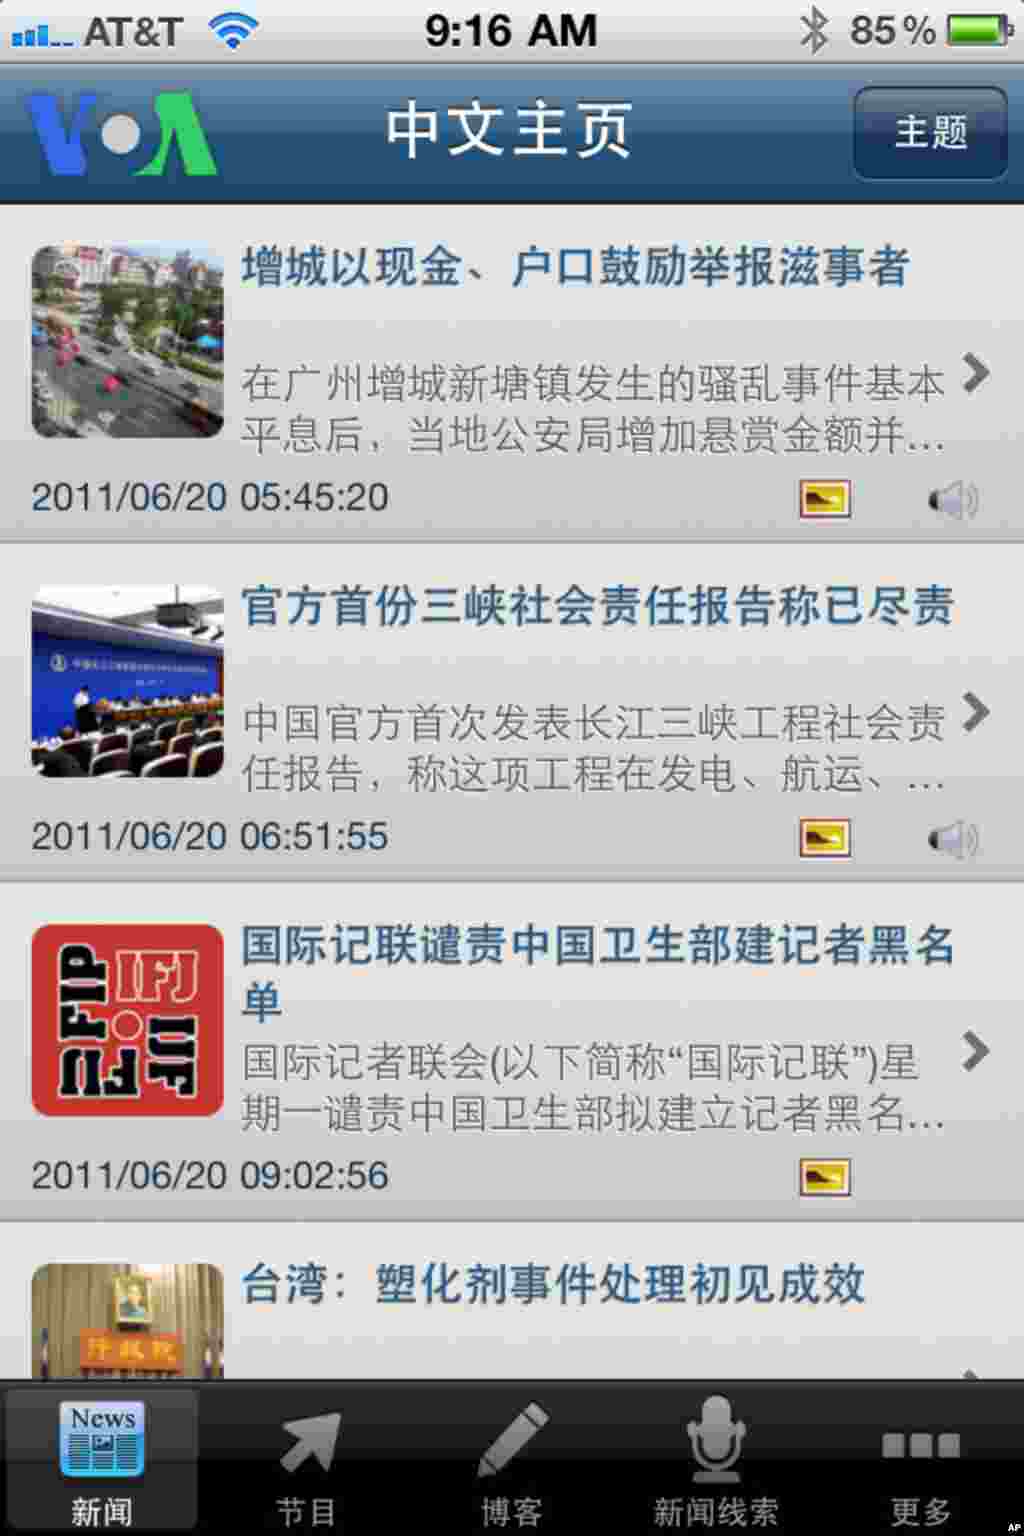 美国之音中文部iPhone中文新闻应用程序: 中文主页